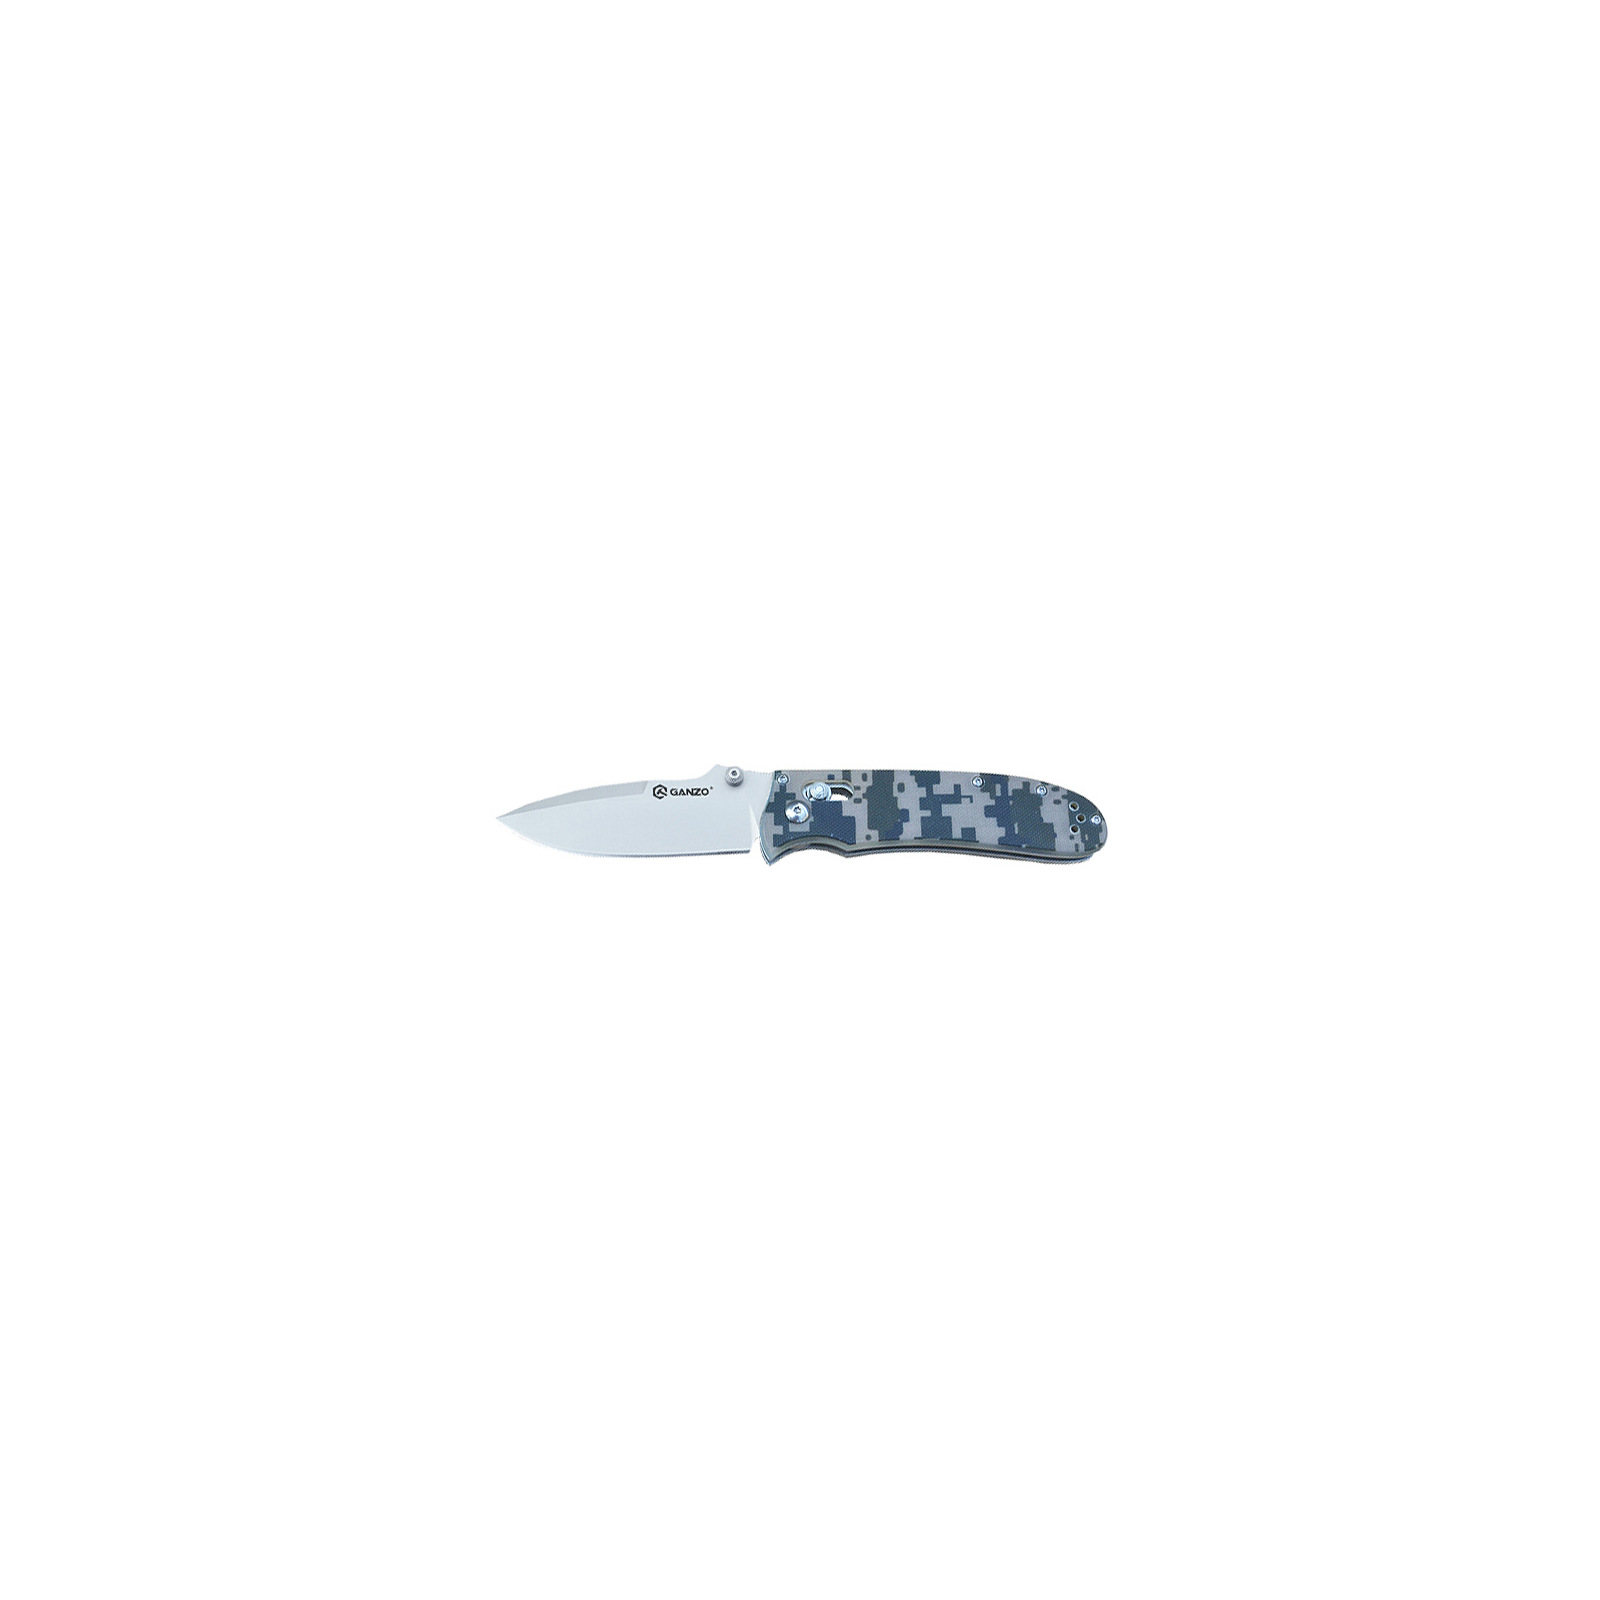 Нож Ganzo G704-BL